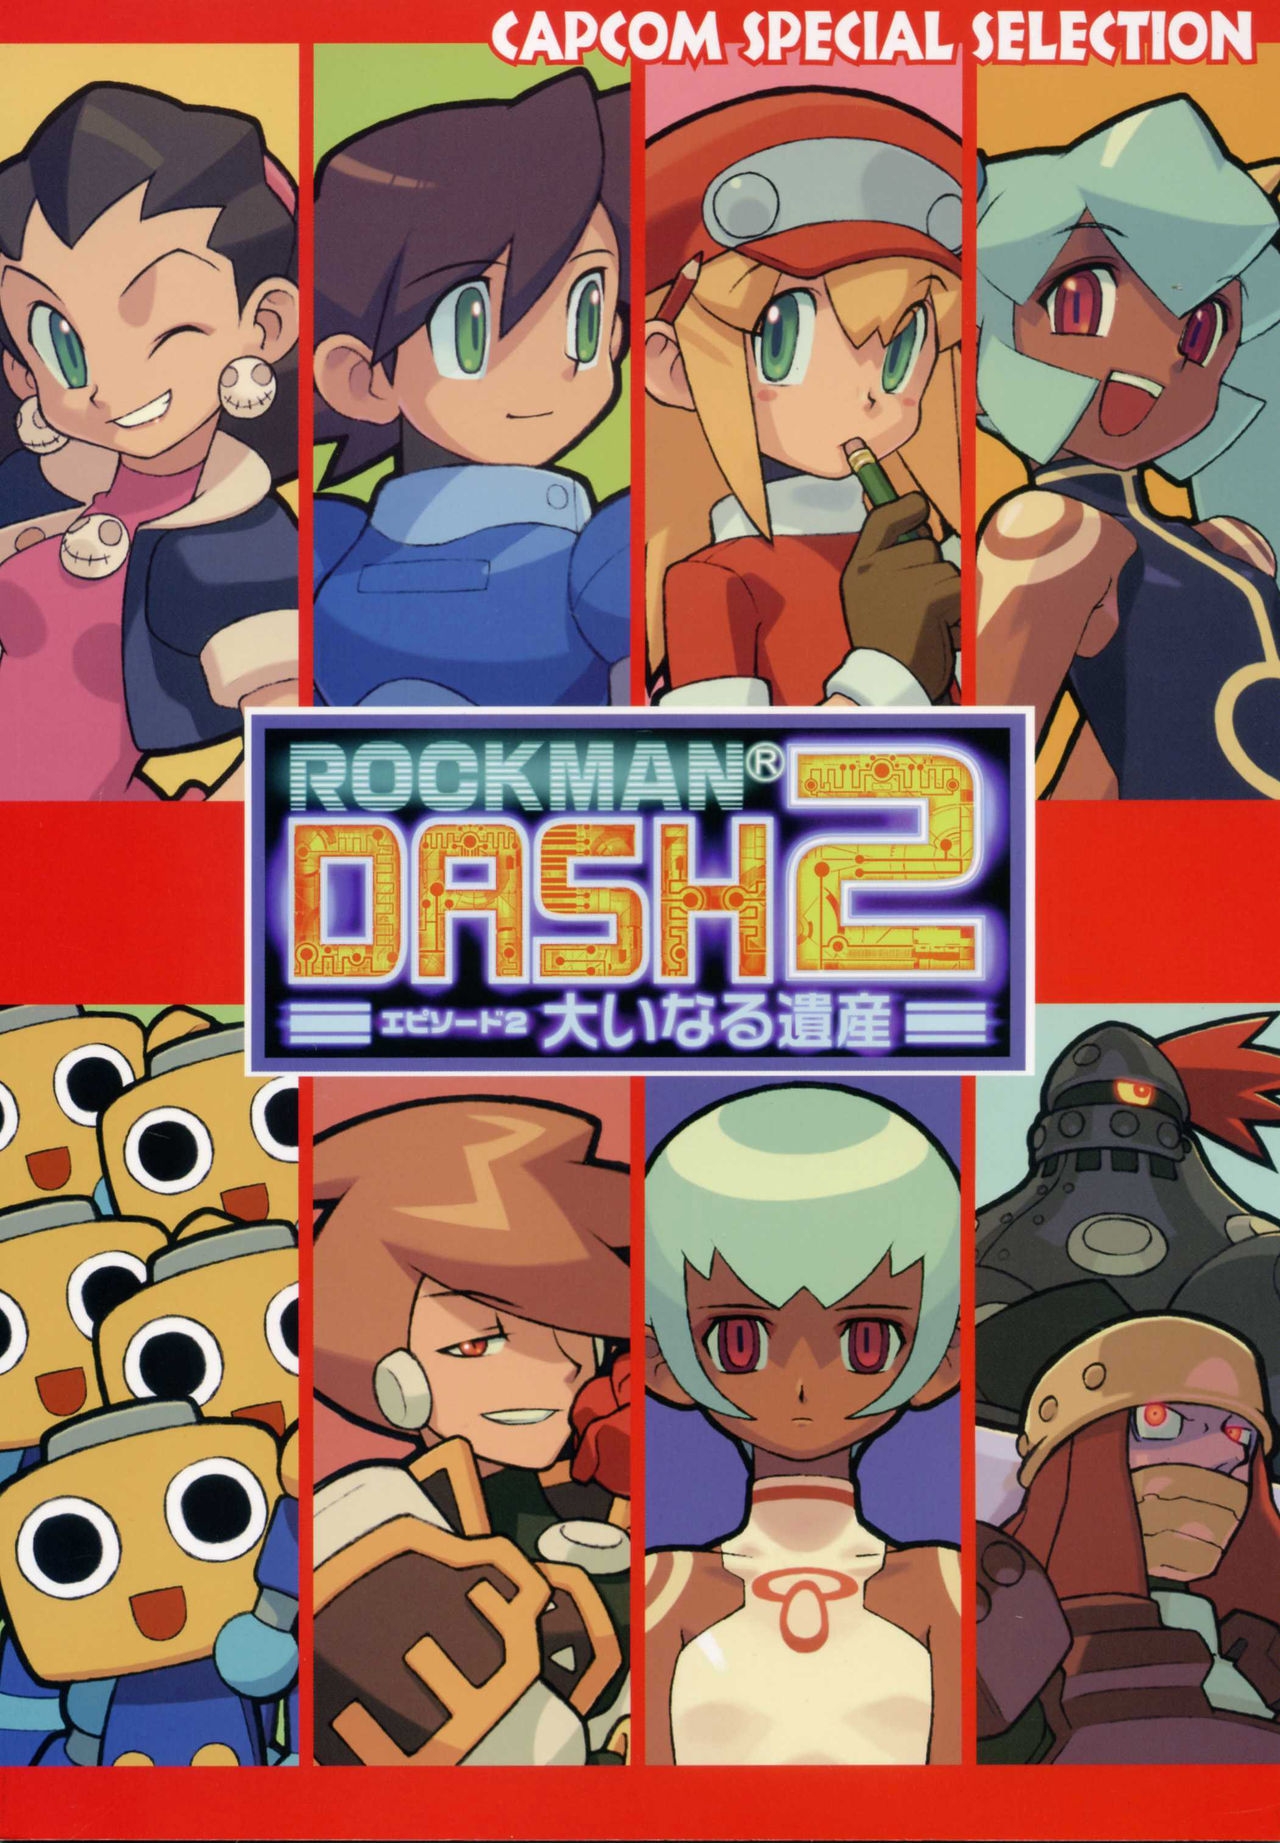 Capcom Special Selection RockMan DASH2 Artbook 0